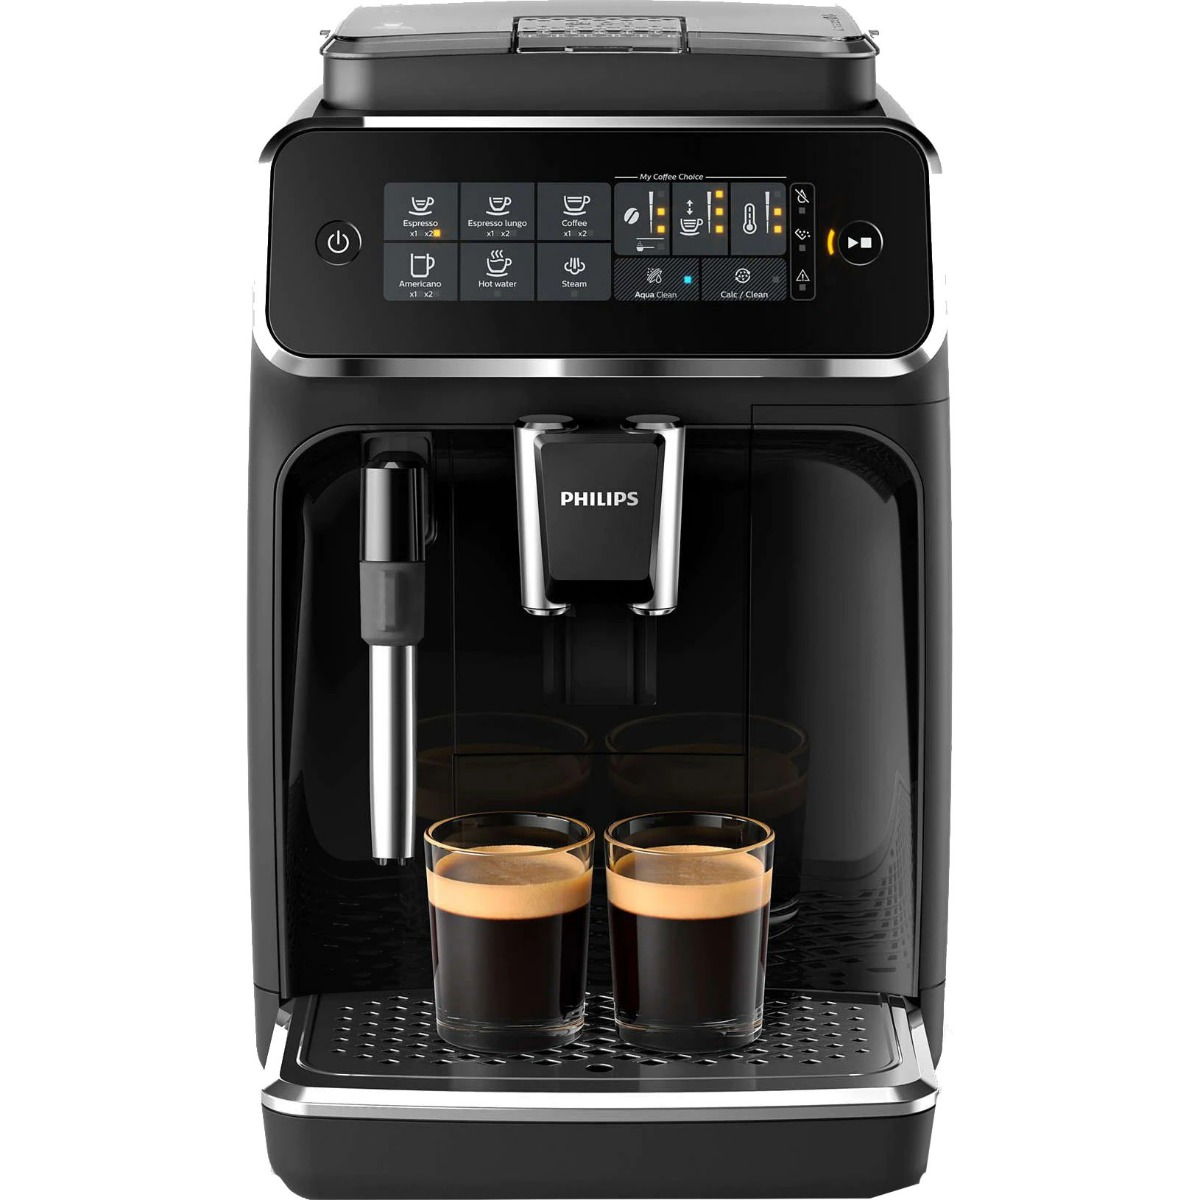 Espressor automat Philips EP3221/40, sistem de spumare a laptelui, 4 bauturi, filtru AquaClean, rasnita ceramica, optiune cafea macinata, ecran tactil, Negru